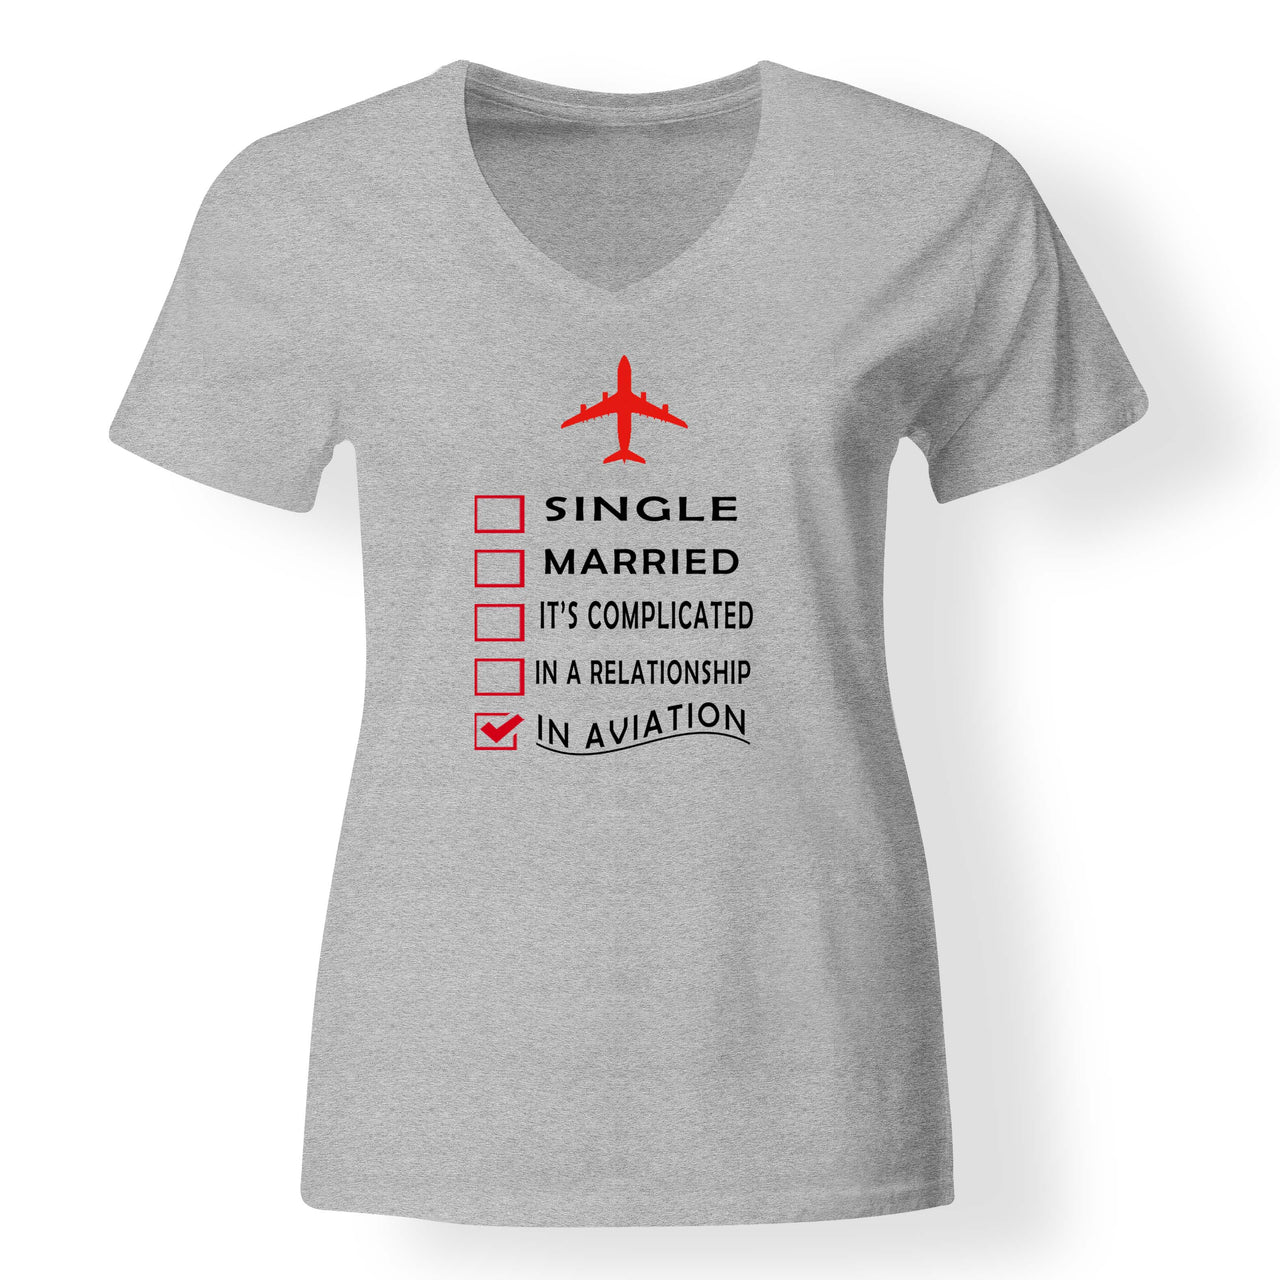 In Aviation Designed V-Neck T-Shirts